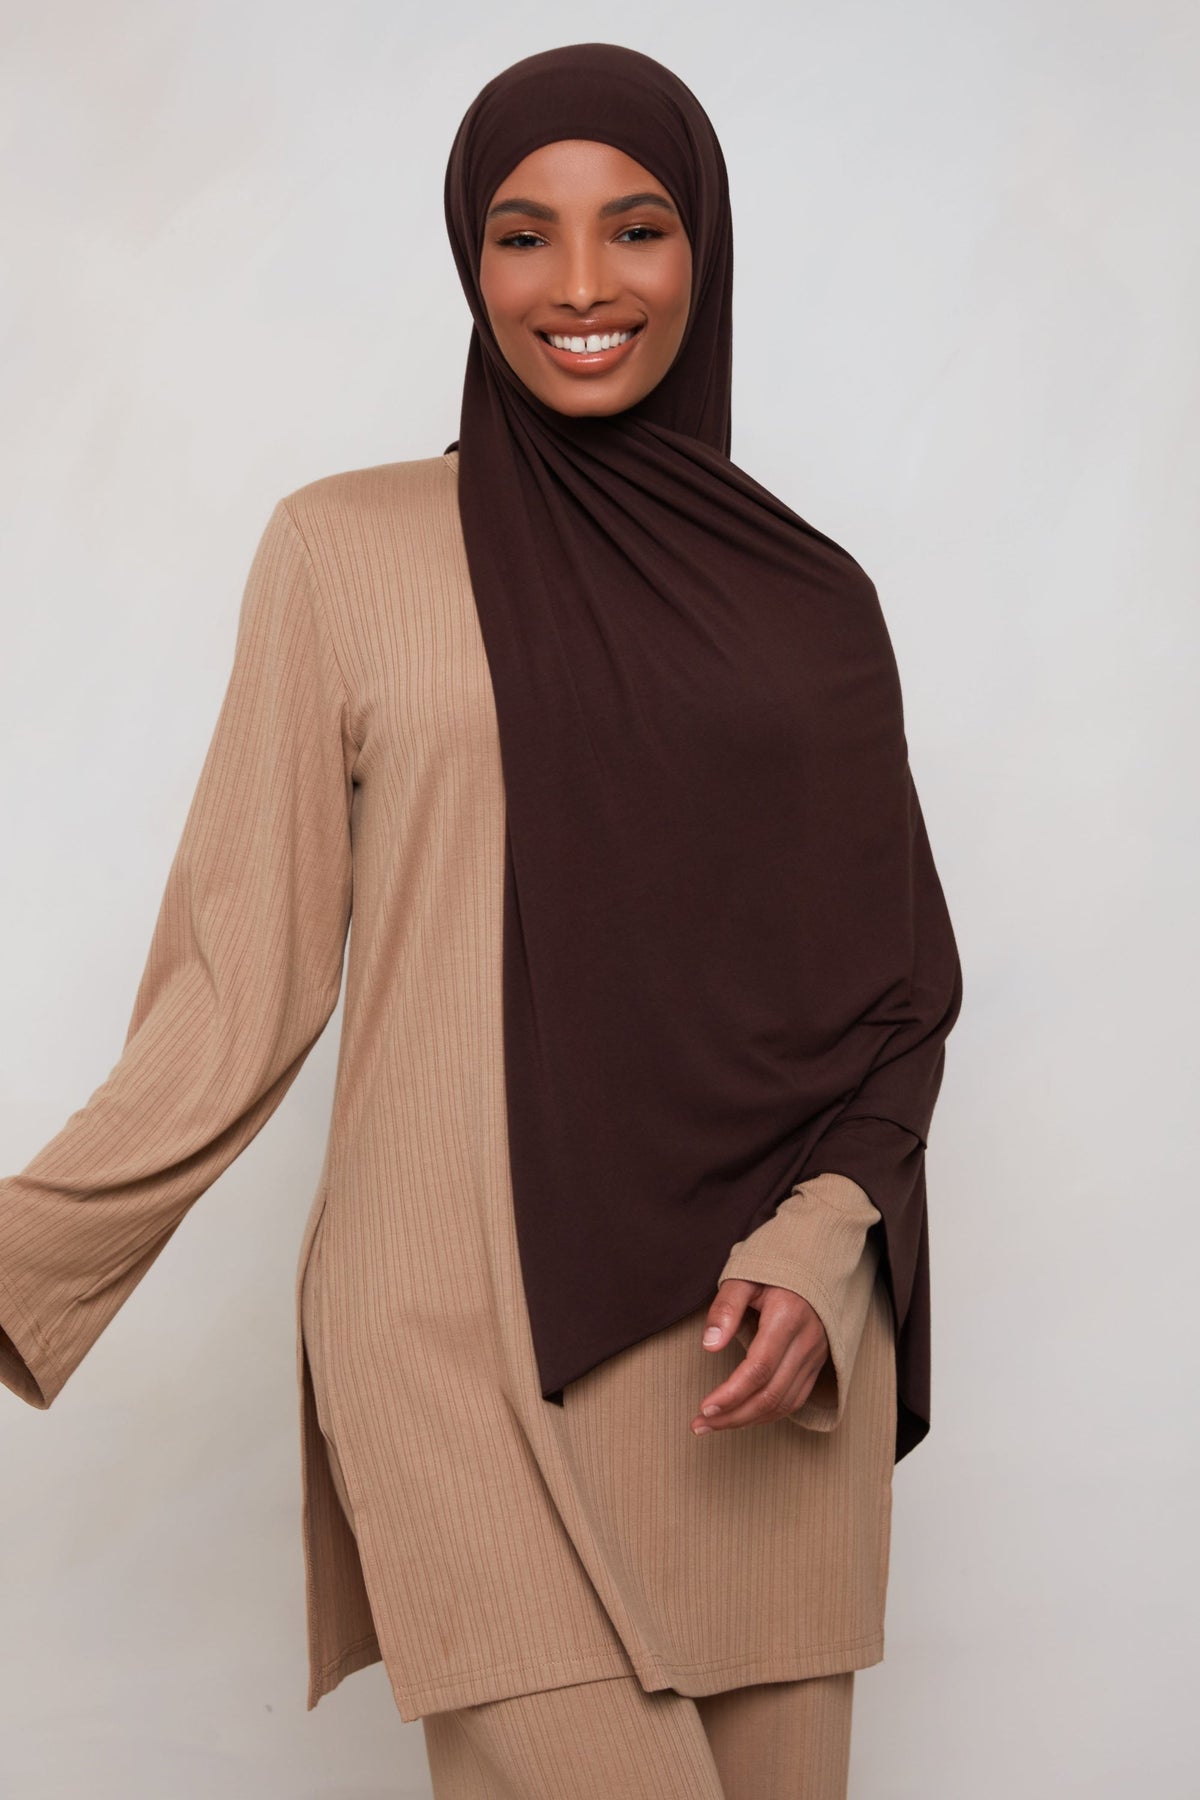 Bamboo Jersey Hijab - Chocolate Plum Veiled 